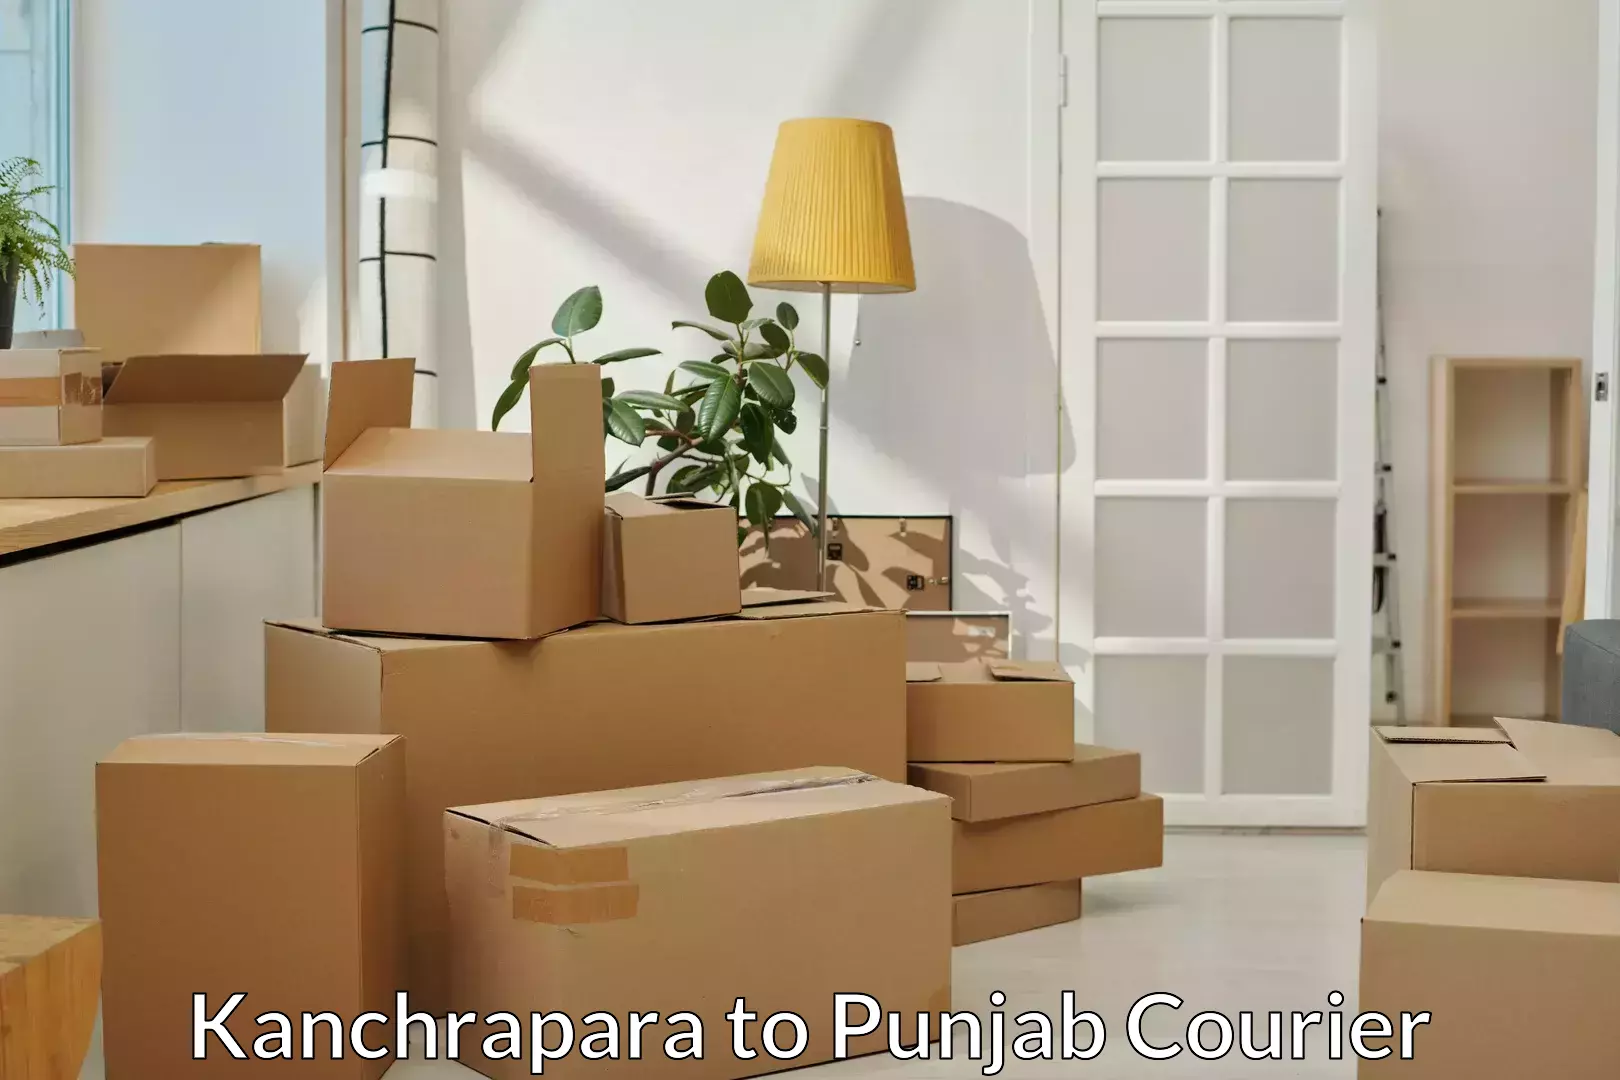 Trusted furniture transport Kanchrapara to Tarsikka